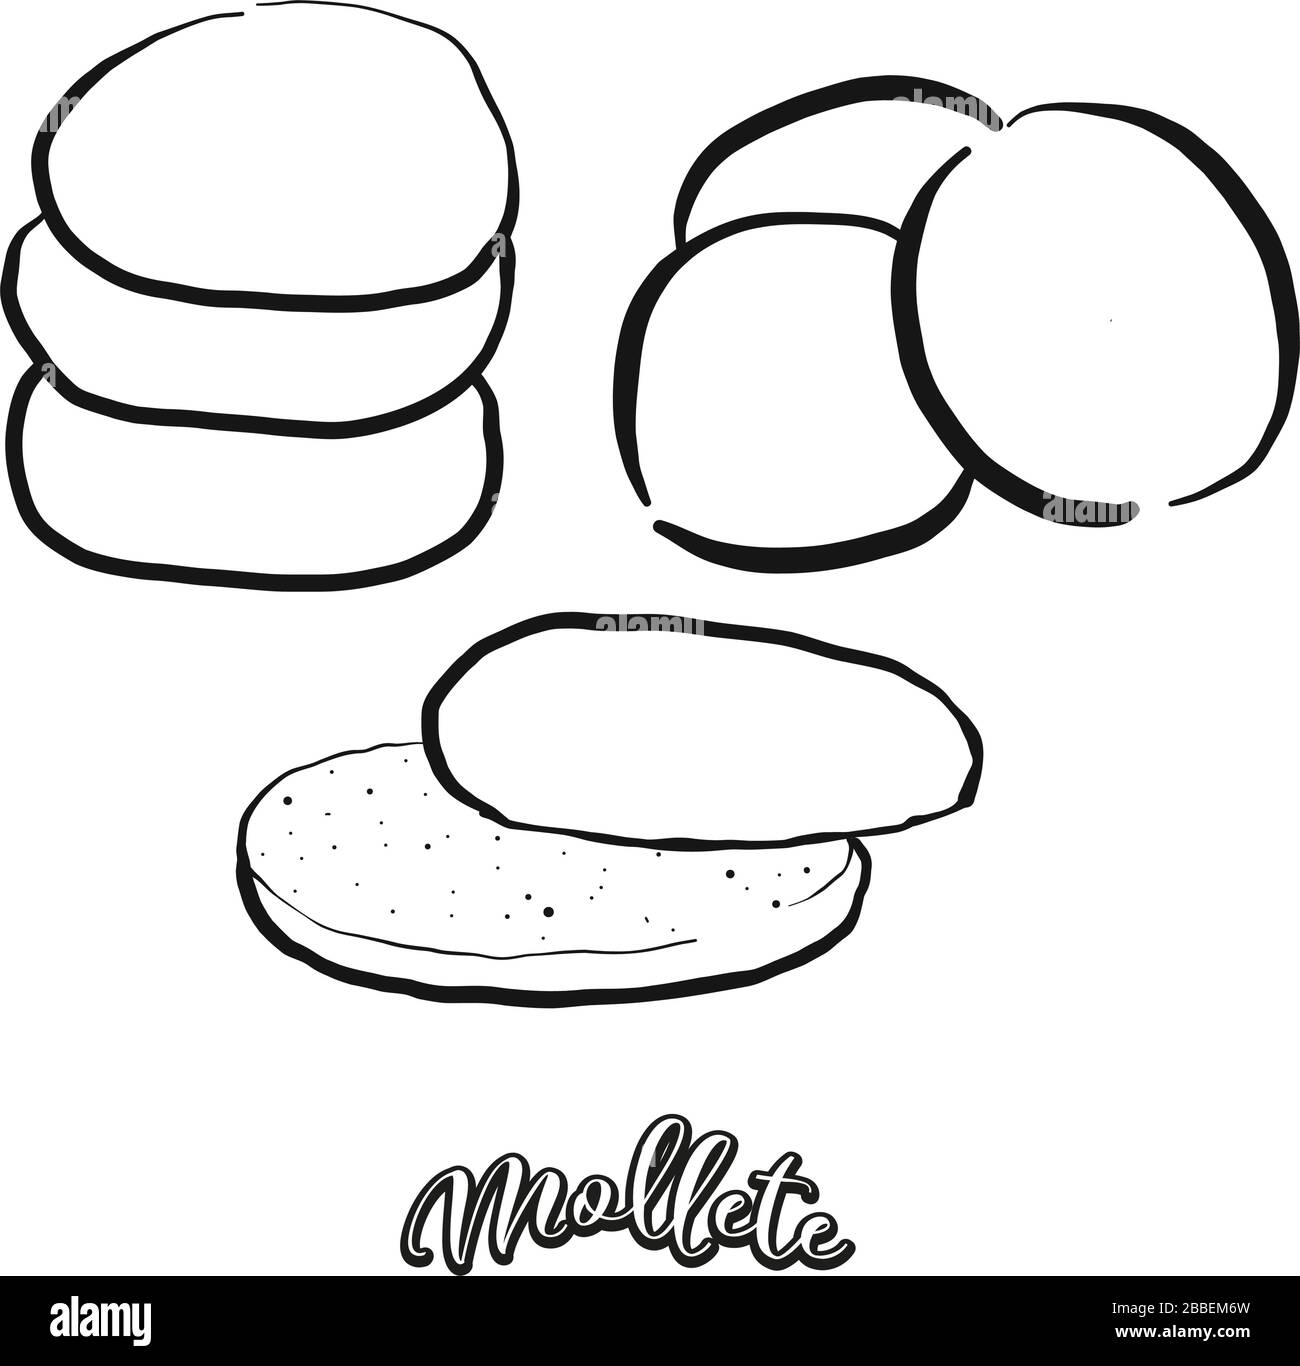 Mollete Essenskizze auf Weiß getrennt. Vektor-Zeichnung von Fladenbrot, Weiß, normalerweise in Andalusien, Spanien bekannt. Lebensmittel-Illustration-Serie. Stock Vektor